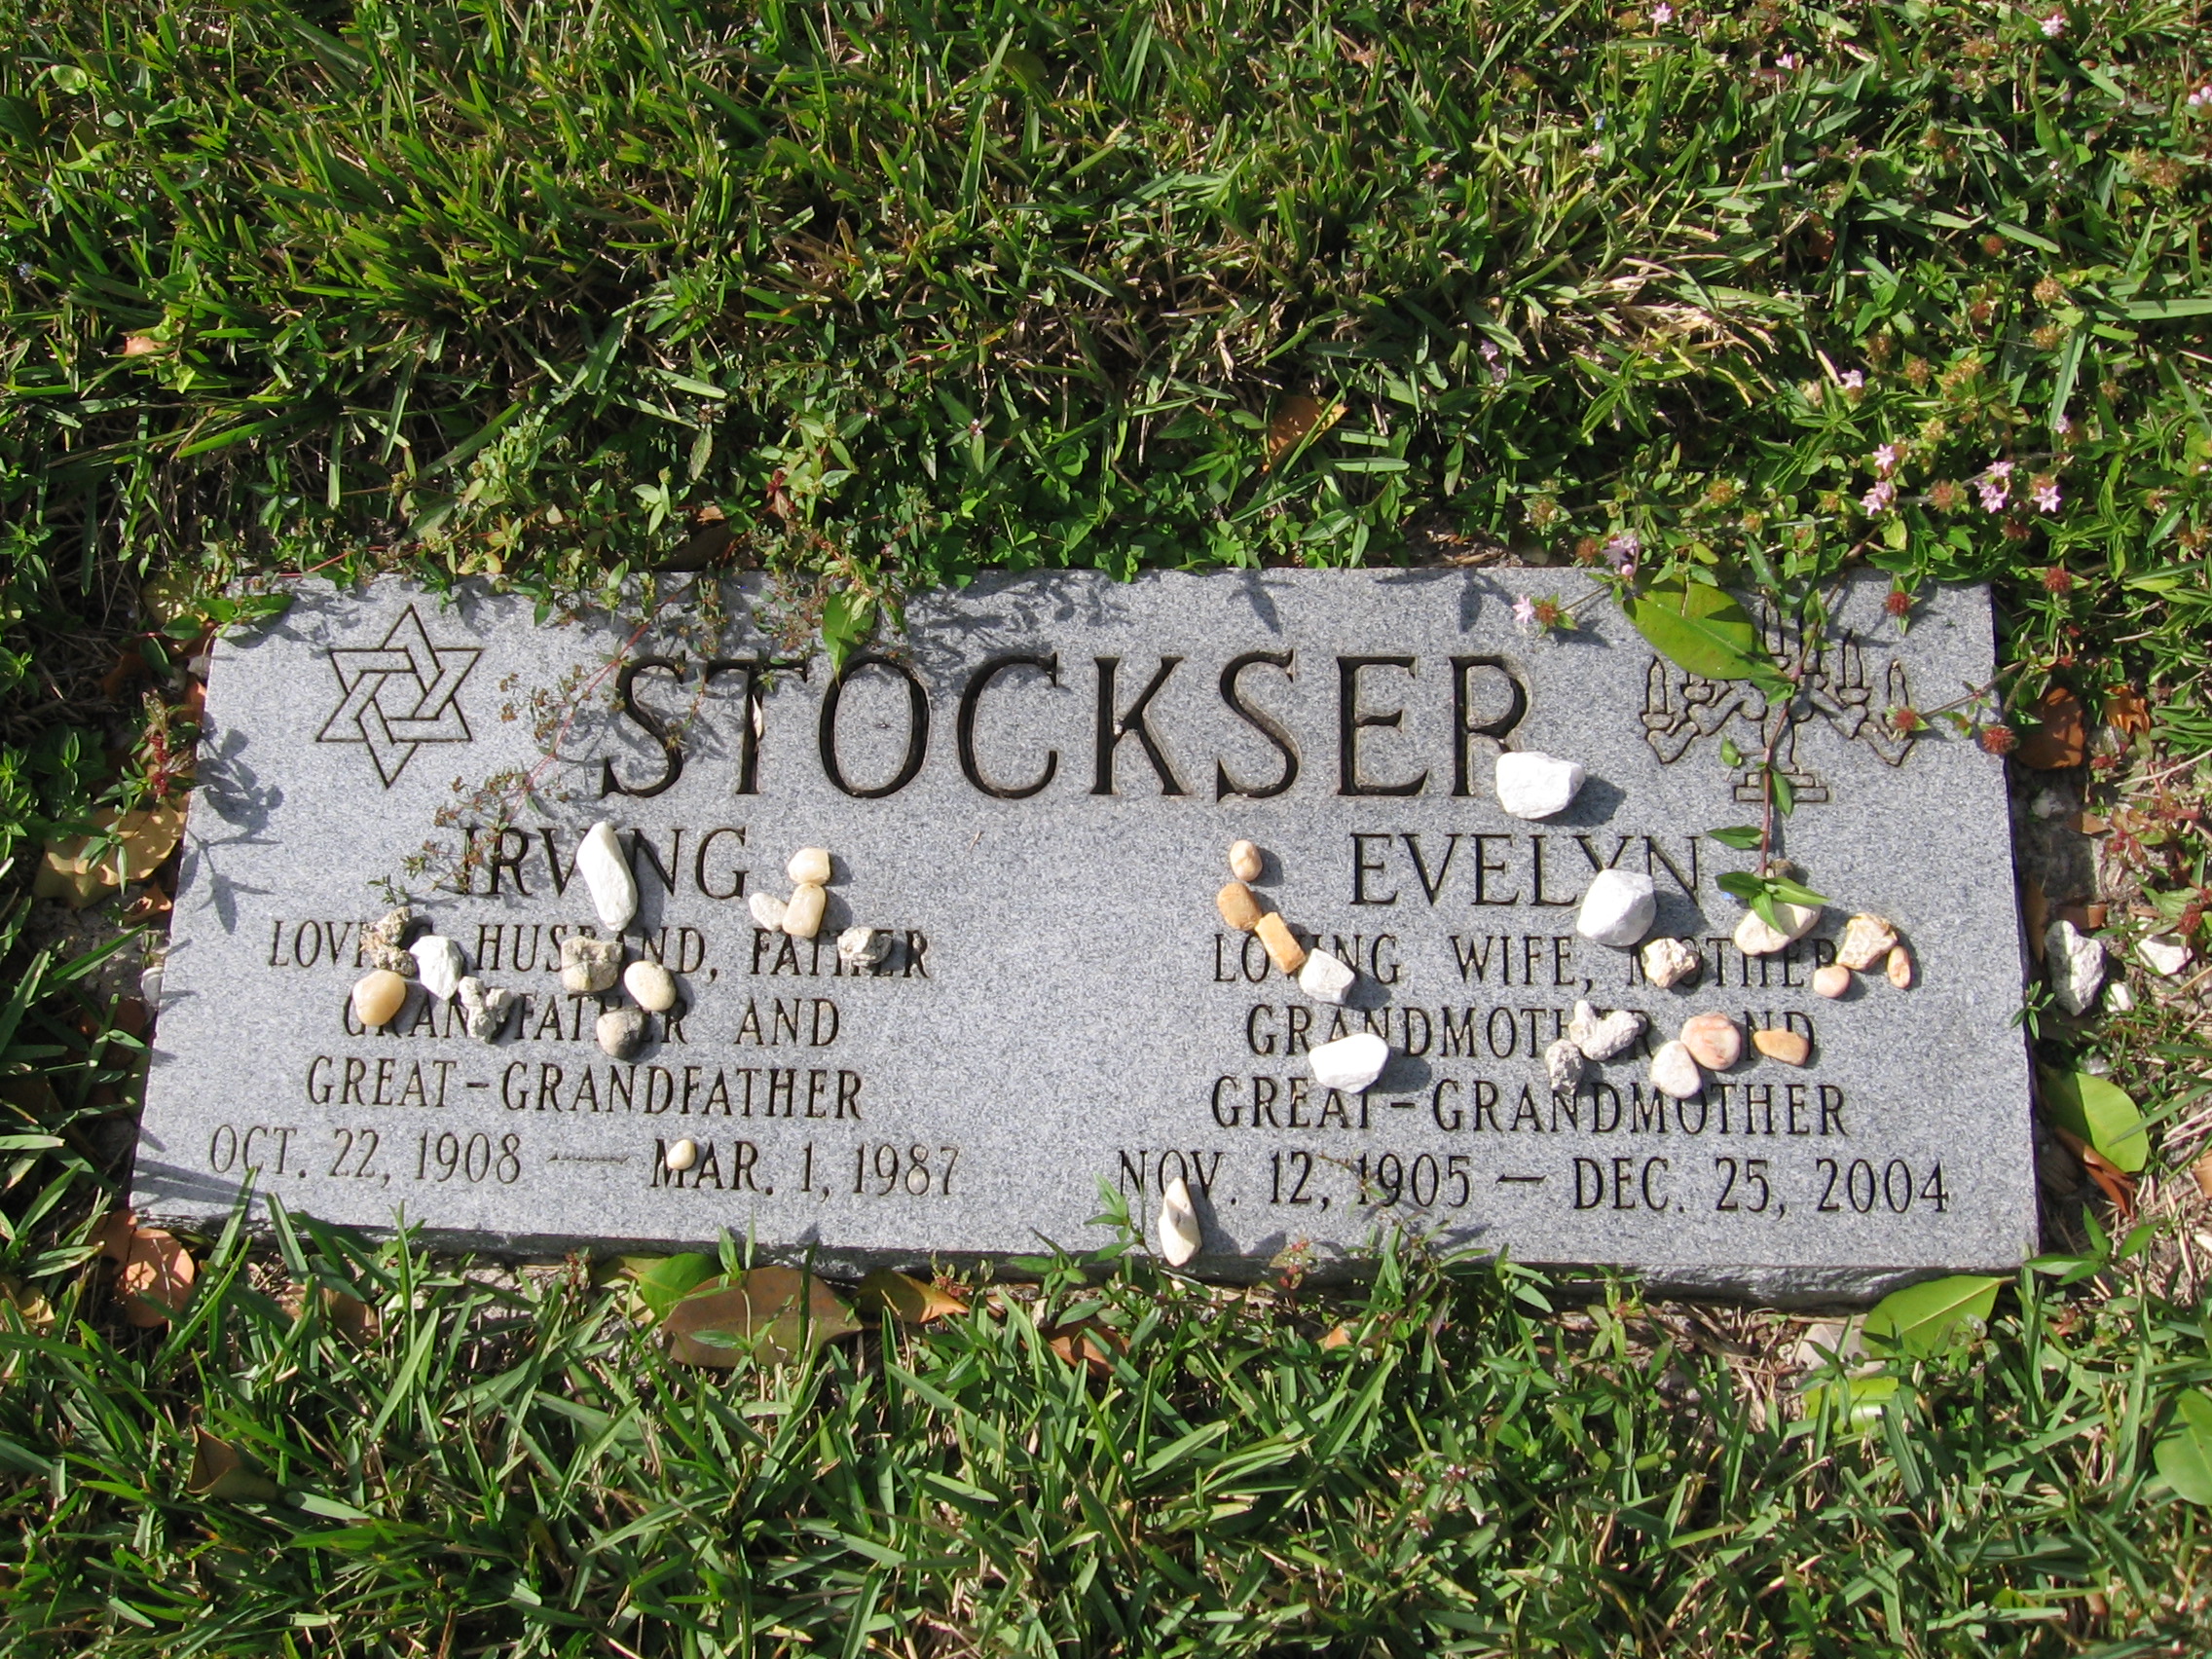 Irving Stockser